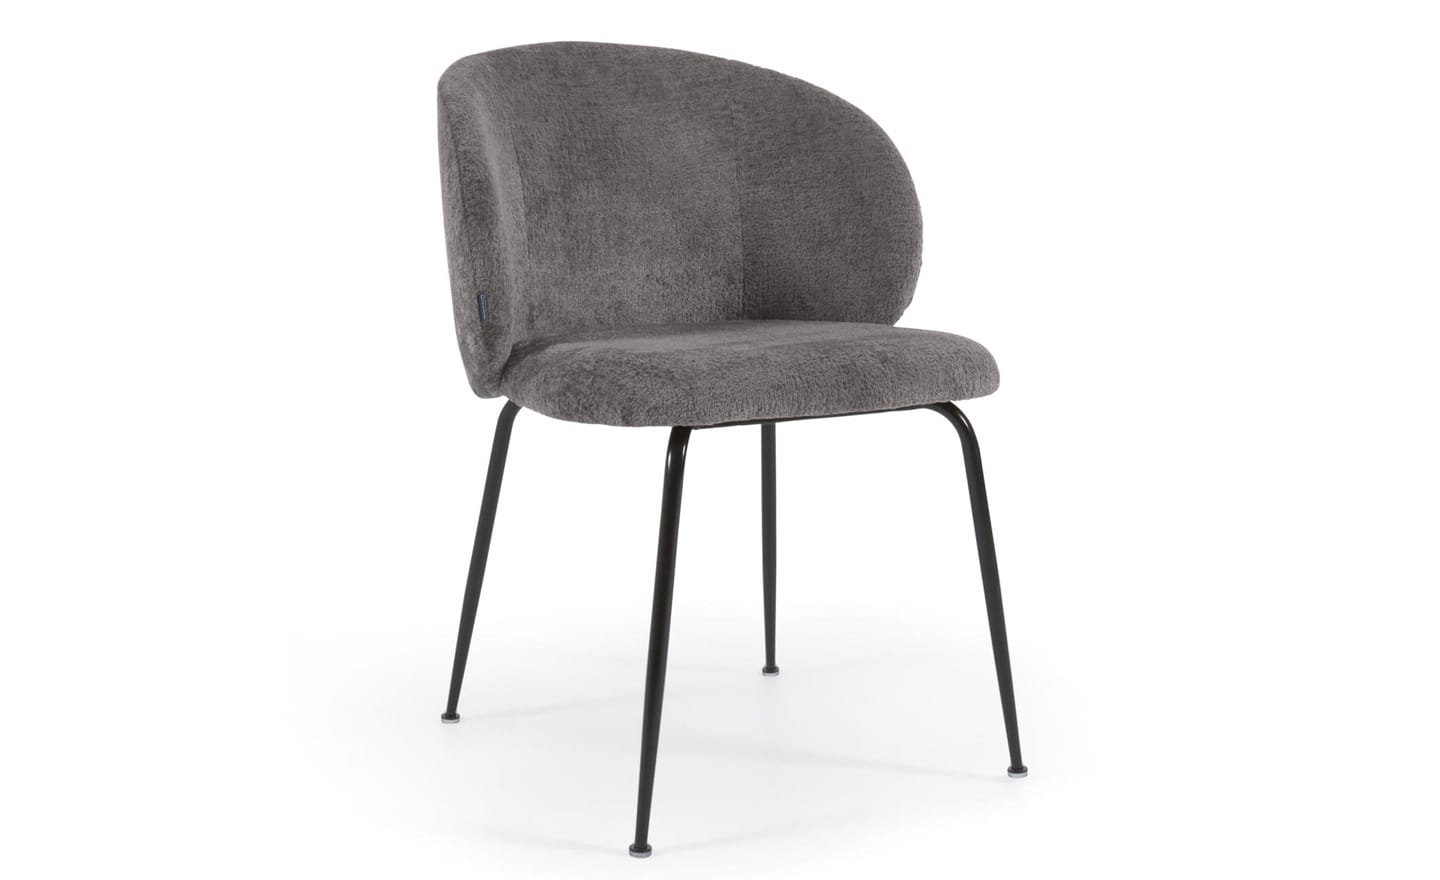 Cadeira Minna Chenille Cinza, estofada em chenille cinza, pernas de aço preto. Design moderno e elegante para espaços de refeição.